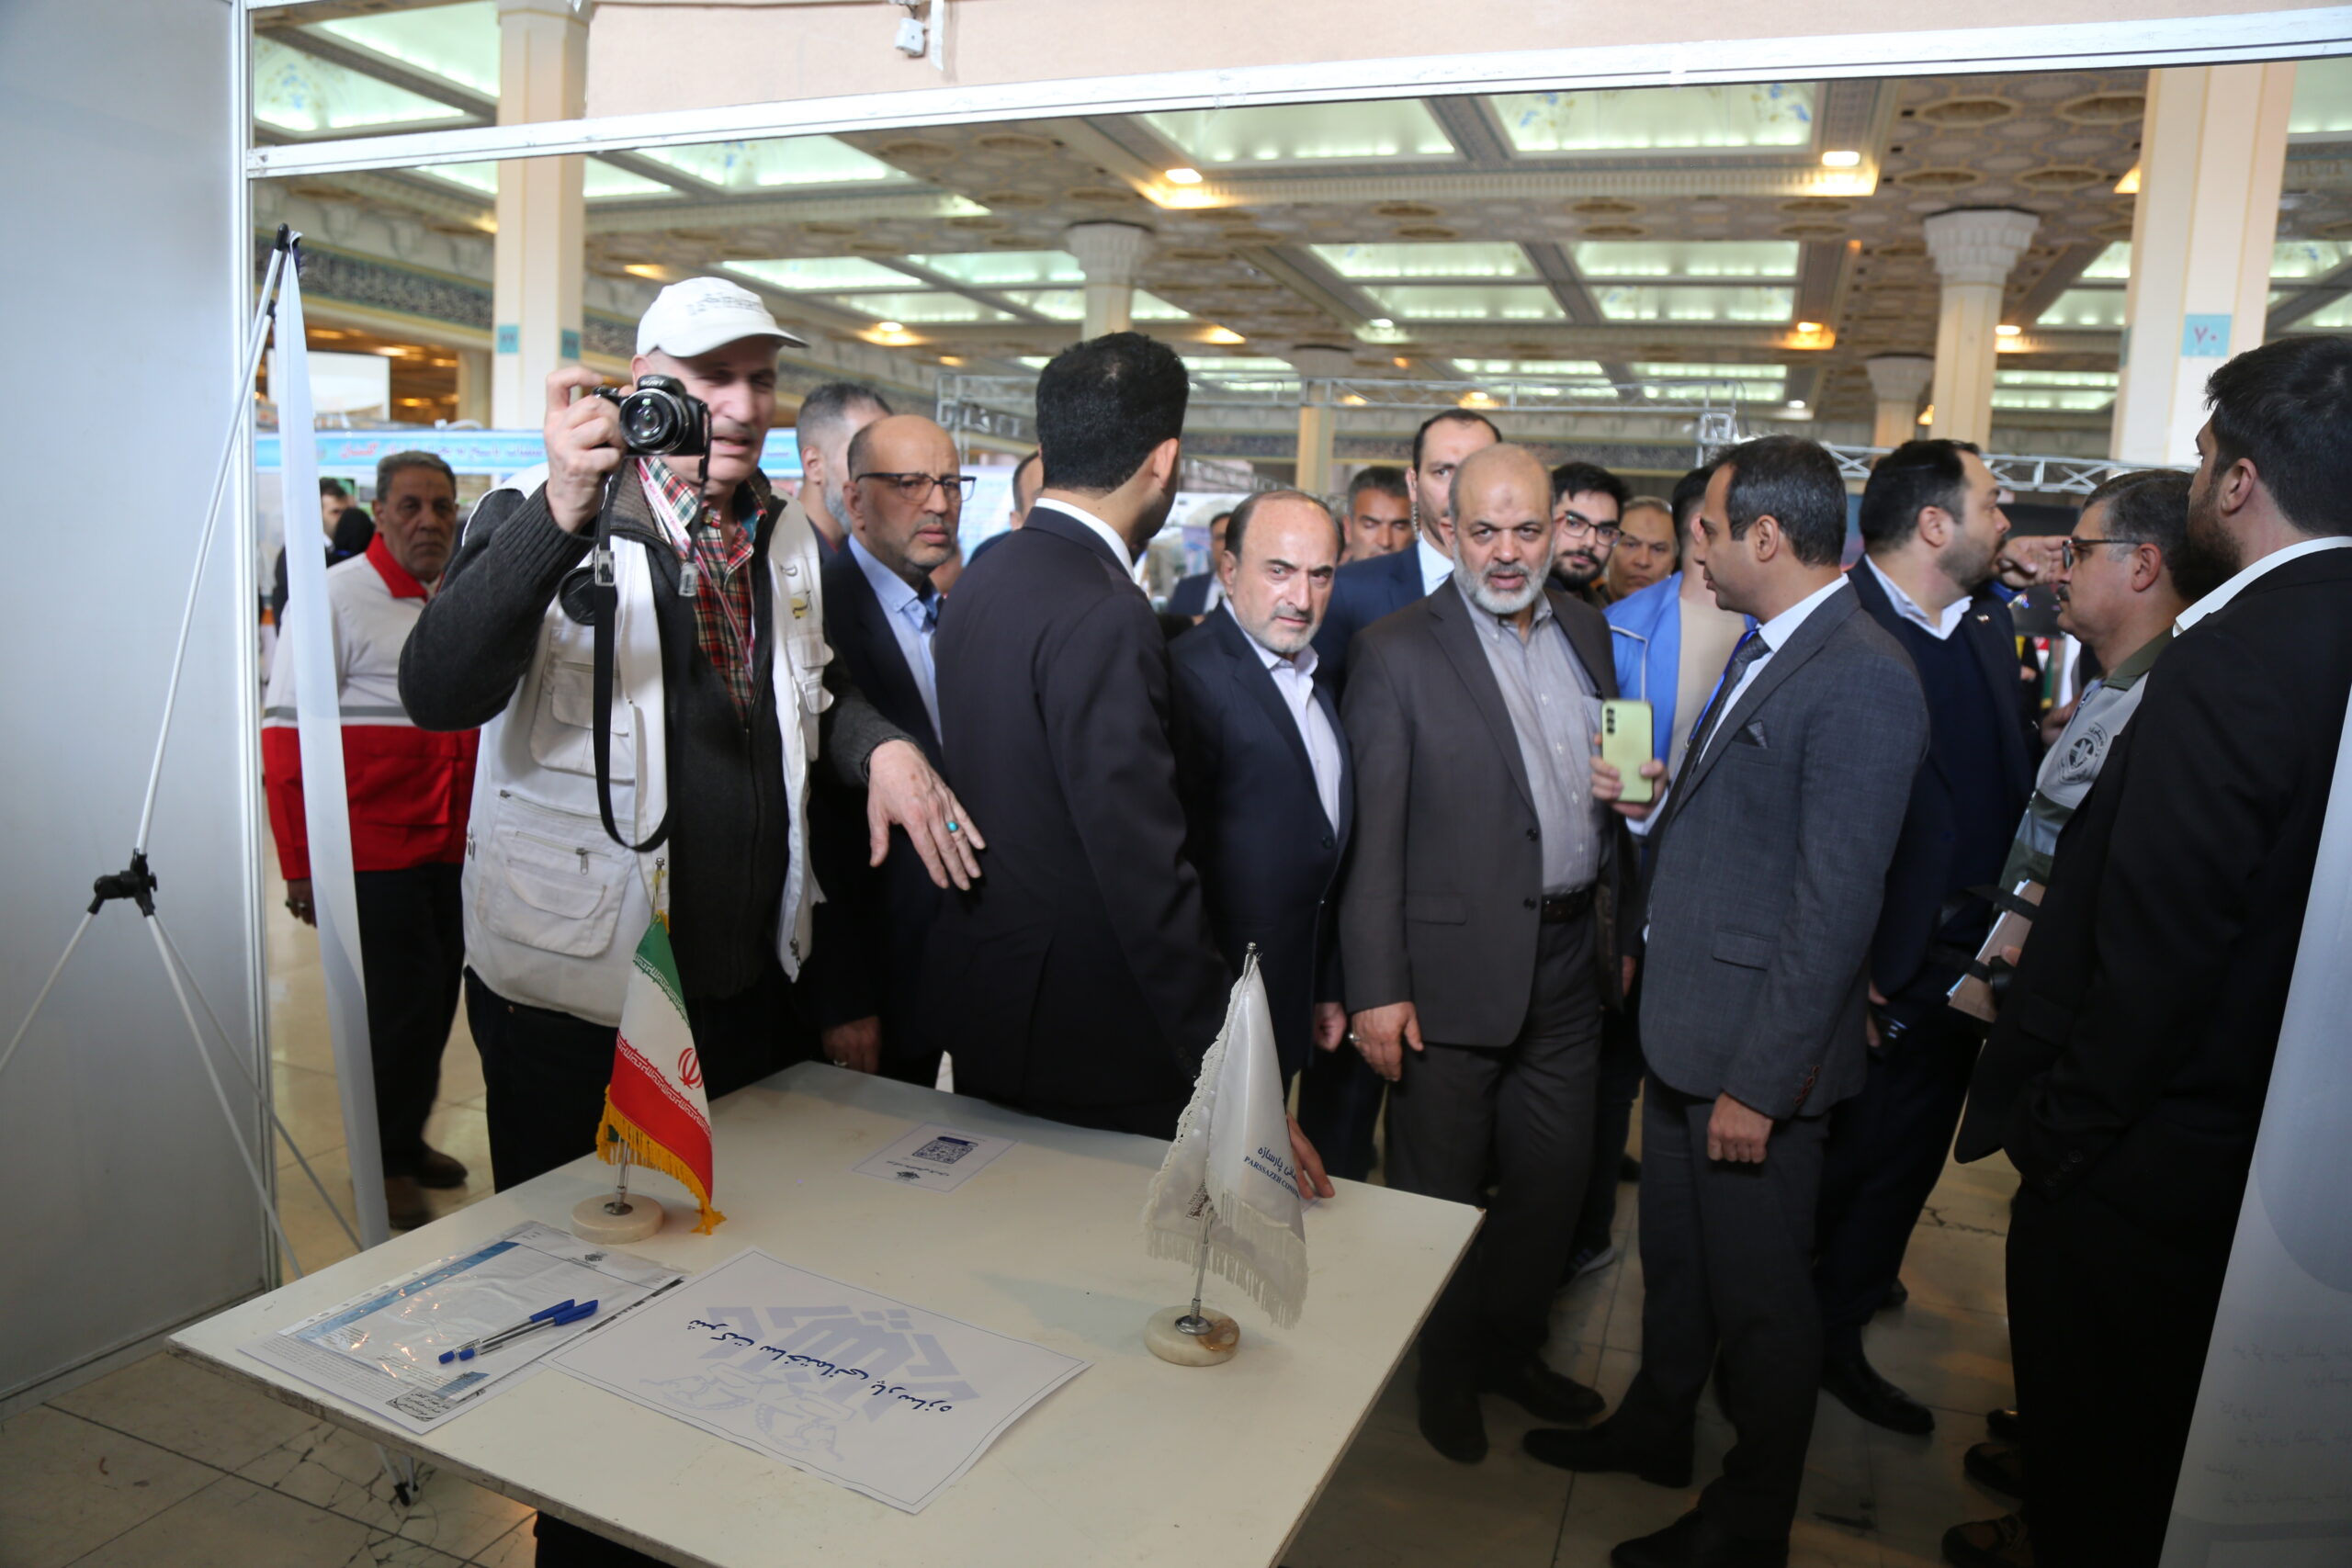  بازدید دکتر احمد وحیدی، وزیر کشور از غرفه شرکت ساختمانی پارسازه در نمایشگاه مدیریت بحران